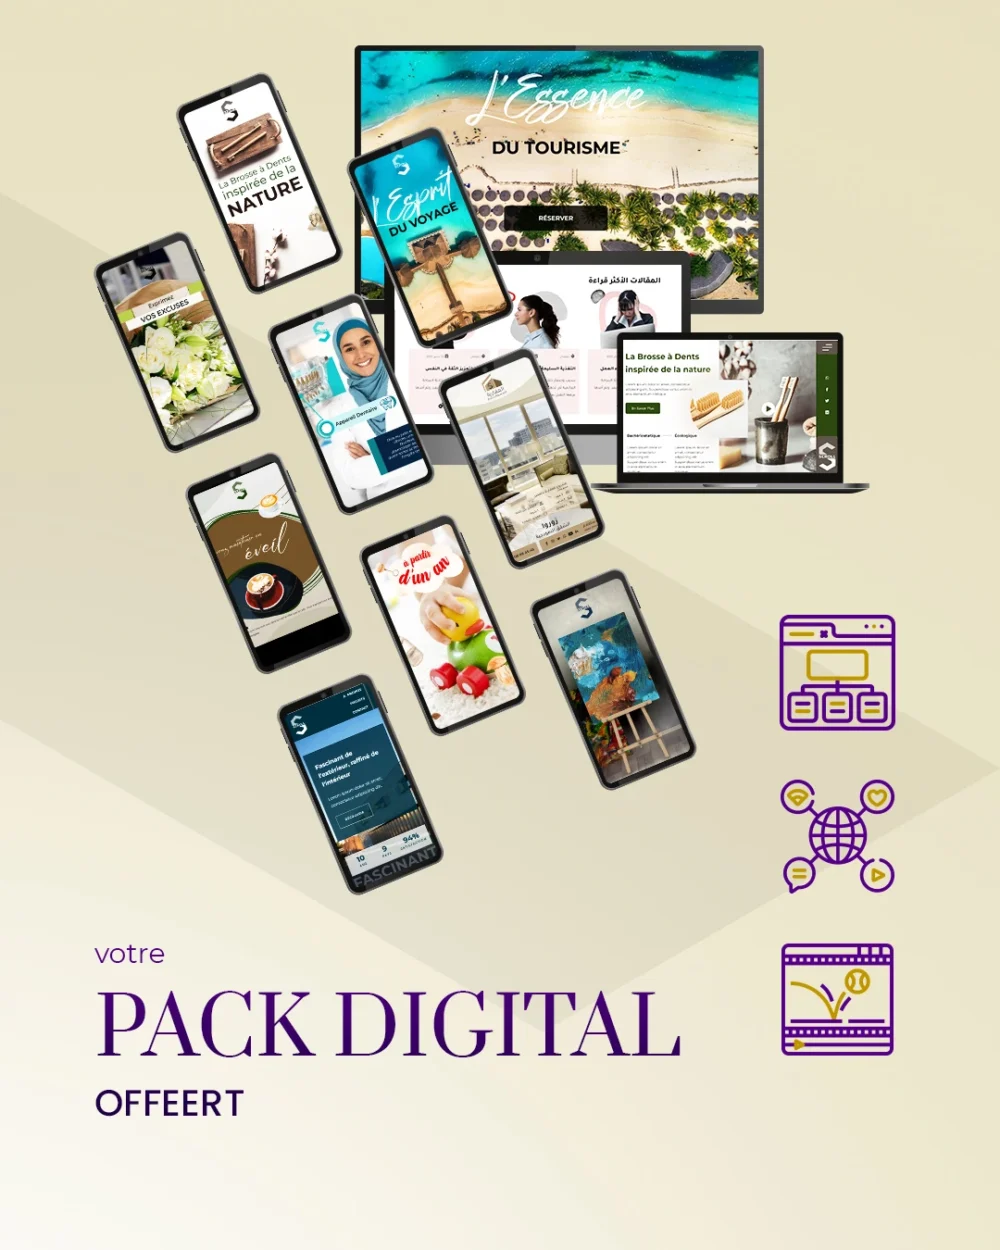 Direct-Scroll | Votre Pack Digital Offert | e-Cartes Club | Stratégie Digitale | Slide 2 | Pack Digital Offert avec un Abonnement de 6 Mois à Notre e-Boutique de Templates pour Visuels Réseaux Sociaux